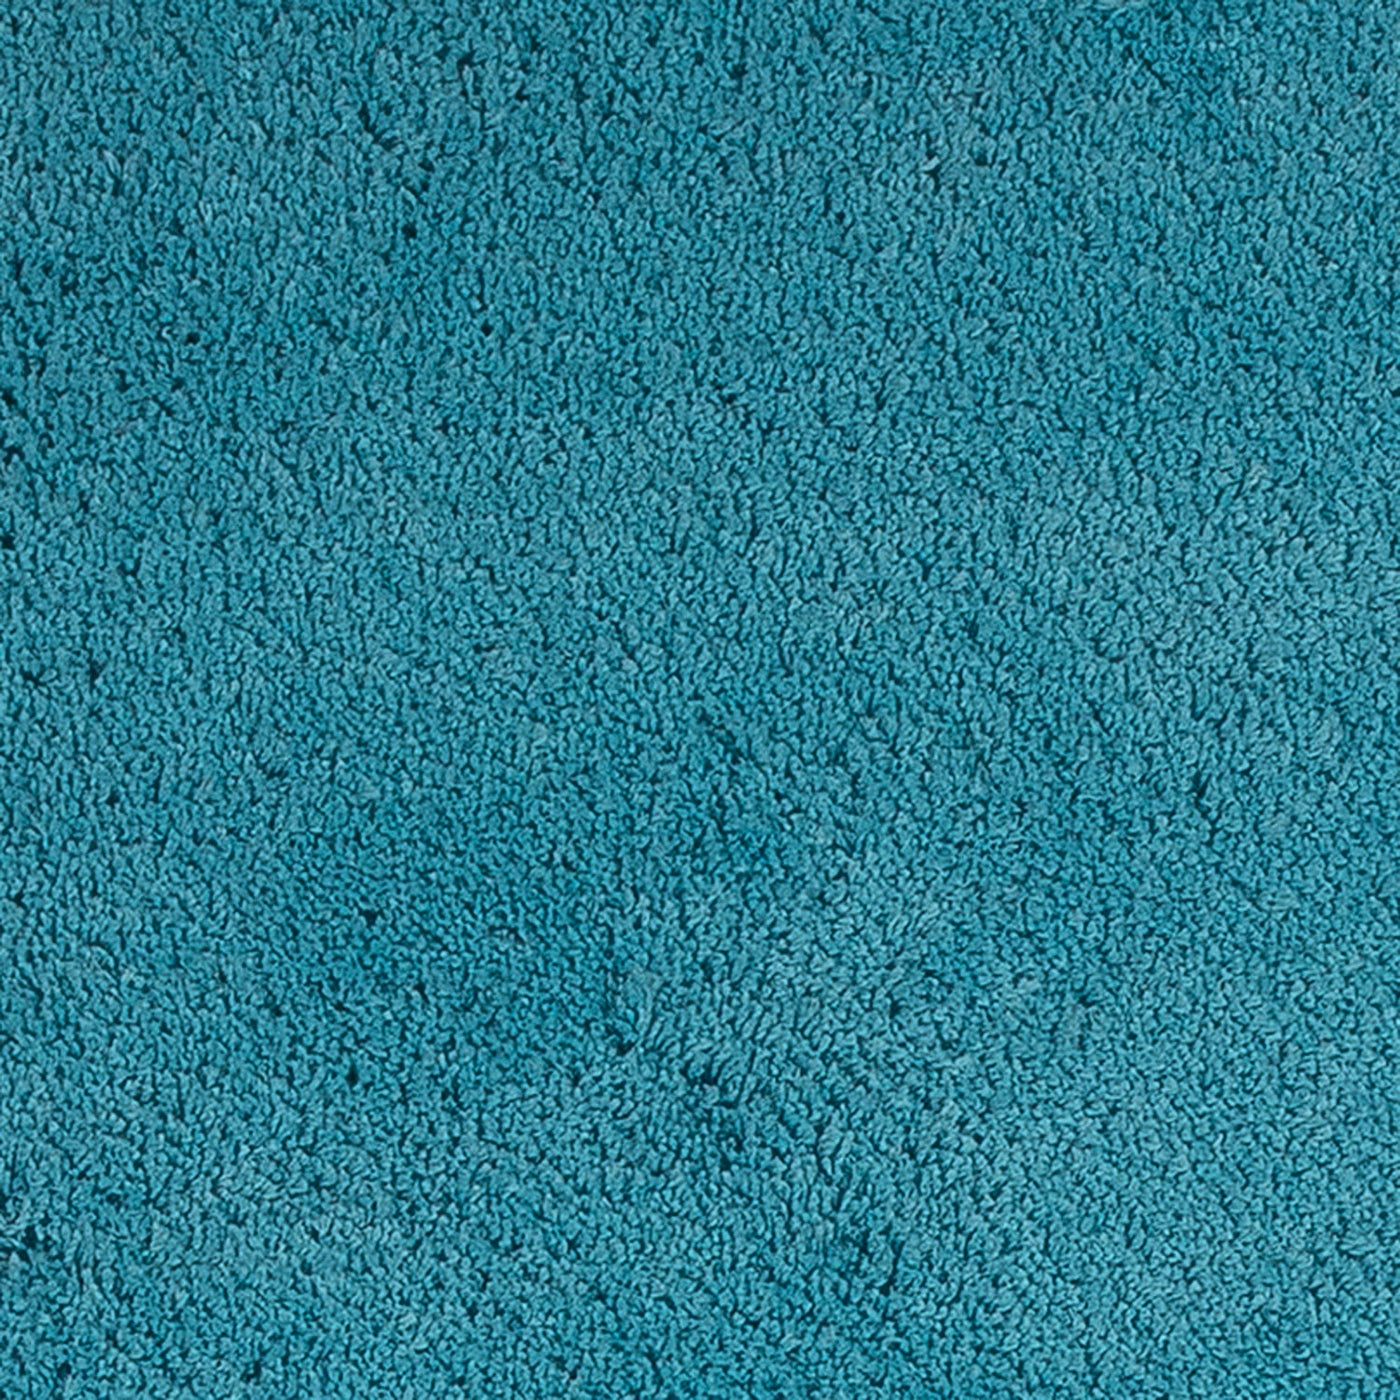 Bahia XIII 7'6" X 9'6" - Highlighter Blue Area Rug